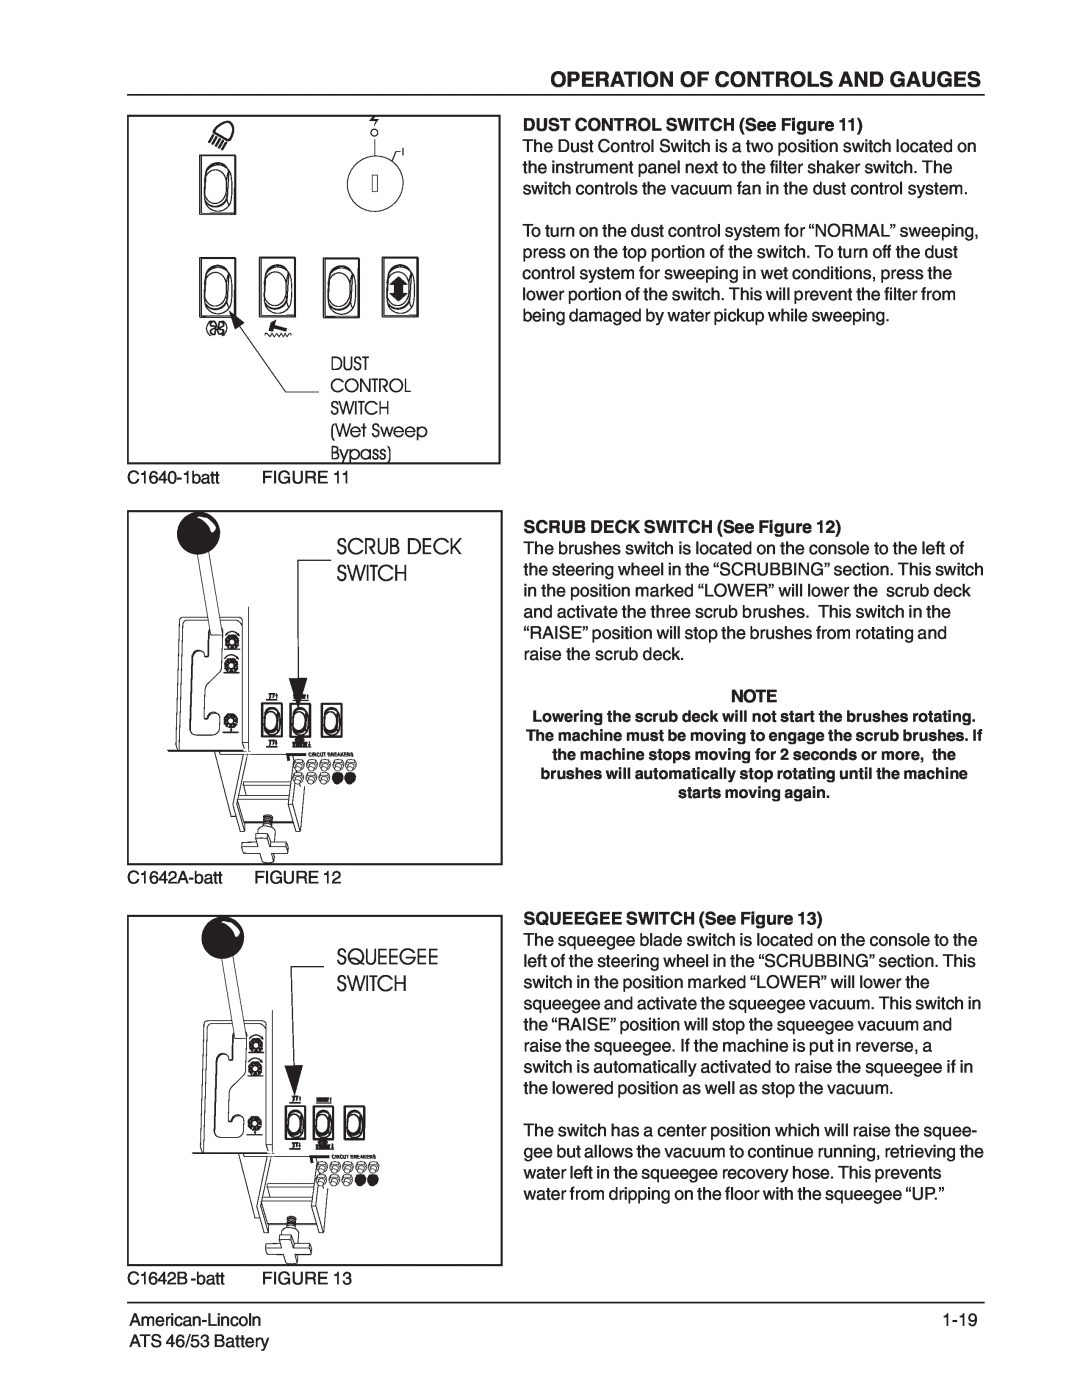 Nilfisk-ALTO 46/53 manual Scrub Deck Switch, DUST CONTROL SWITCH See Figure, SCRUB DECK SWITCH See Figure 